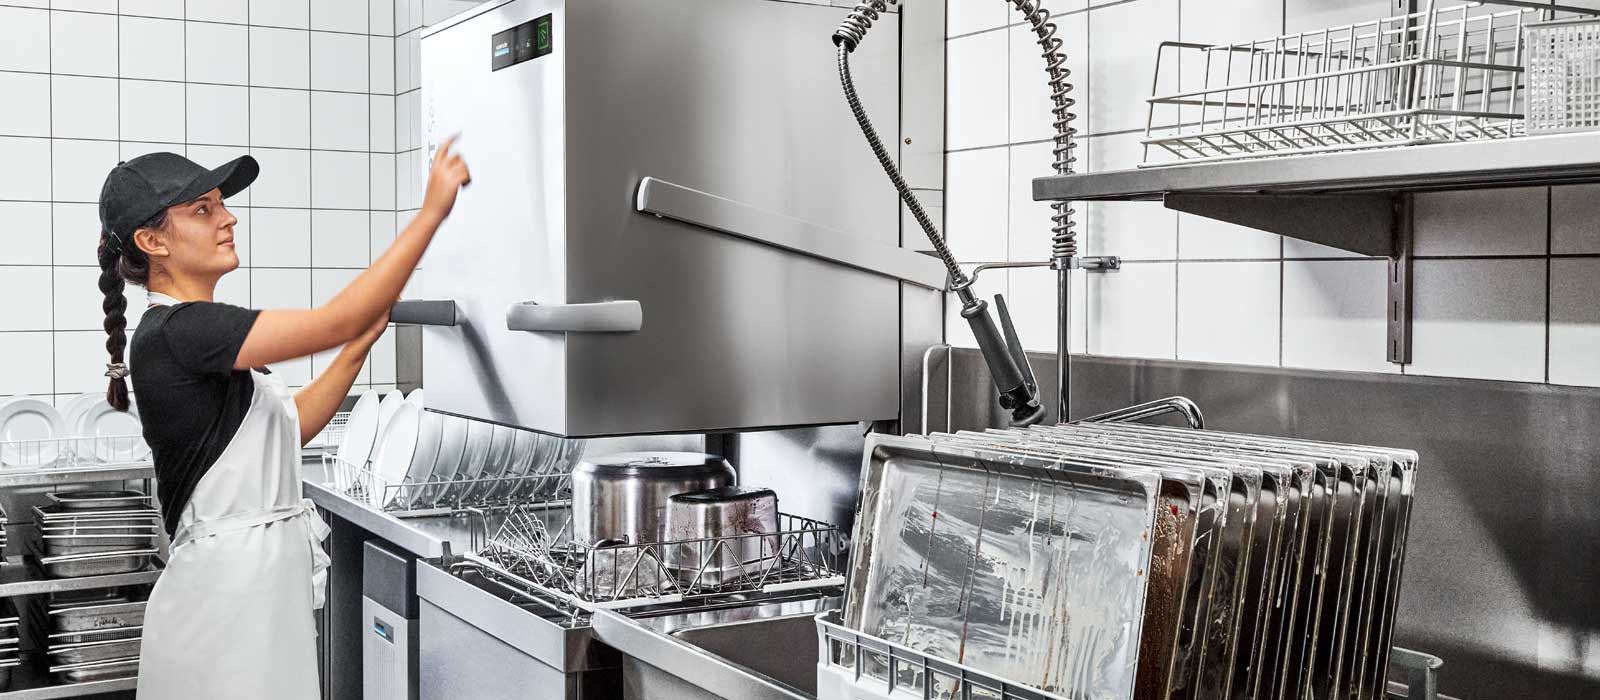 Winterhalter PT Utensil passthrough dishwasher for dishes and utensils